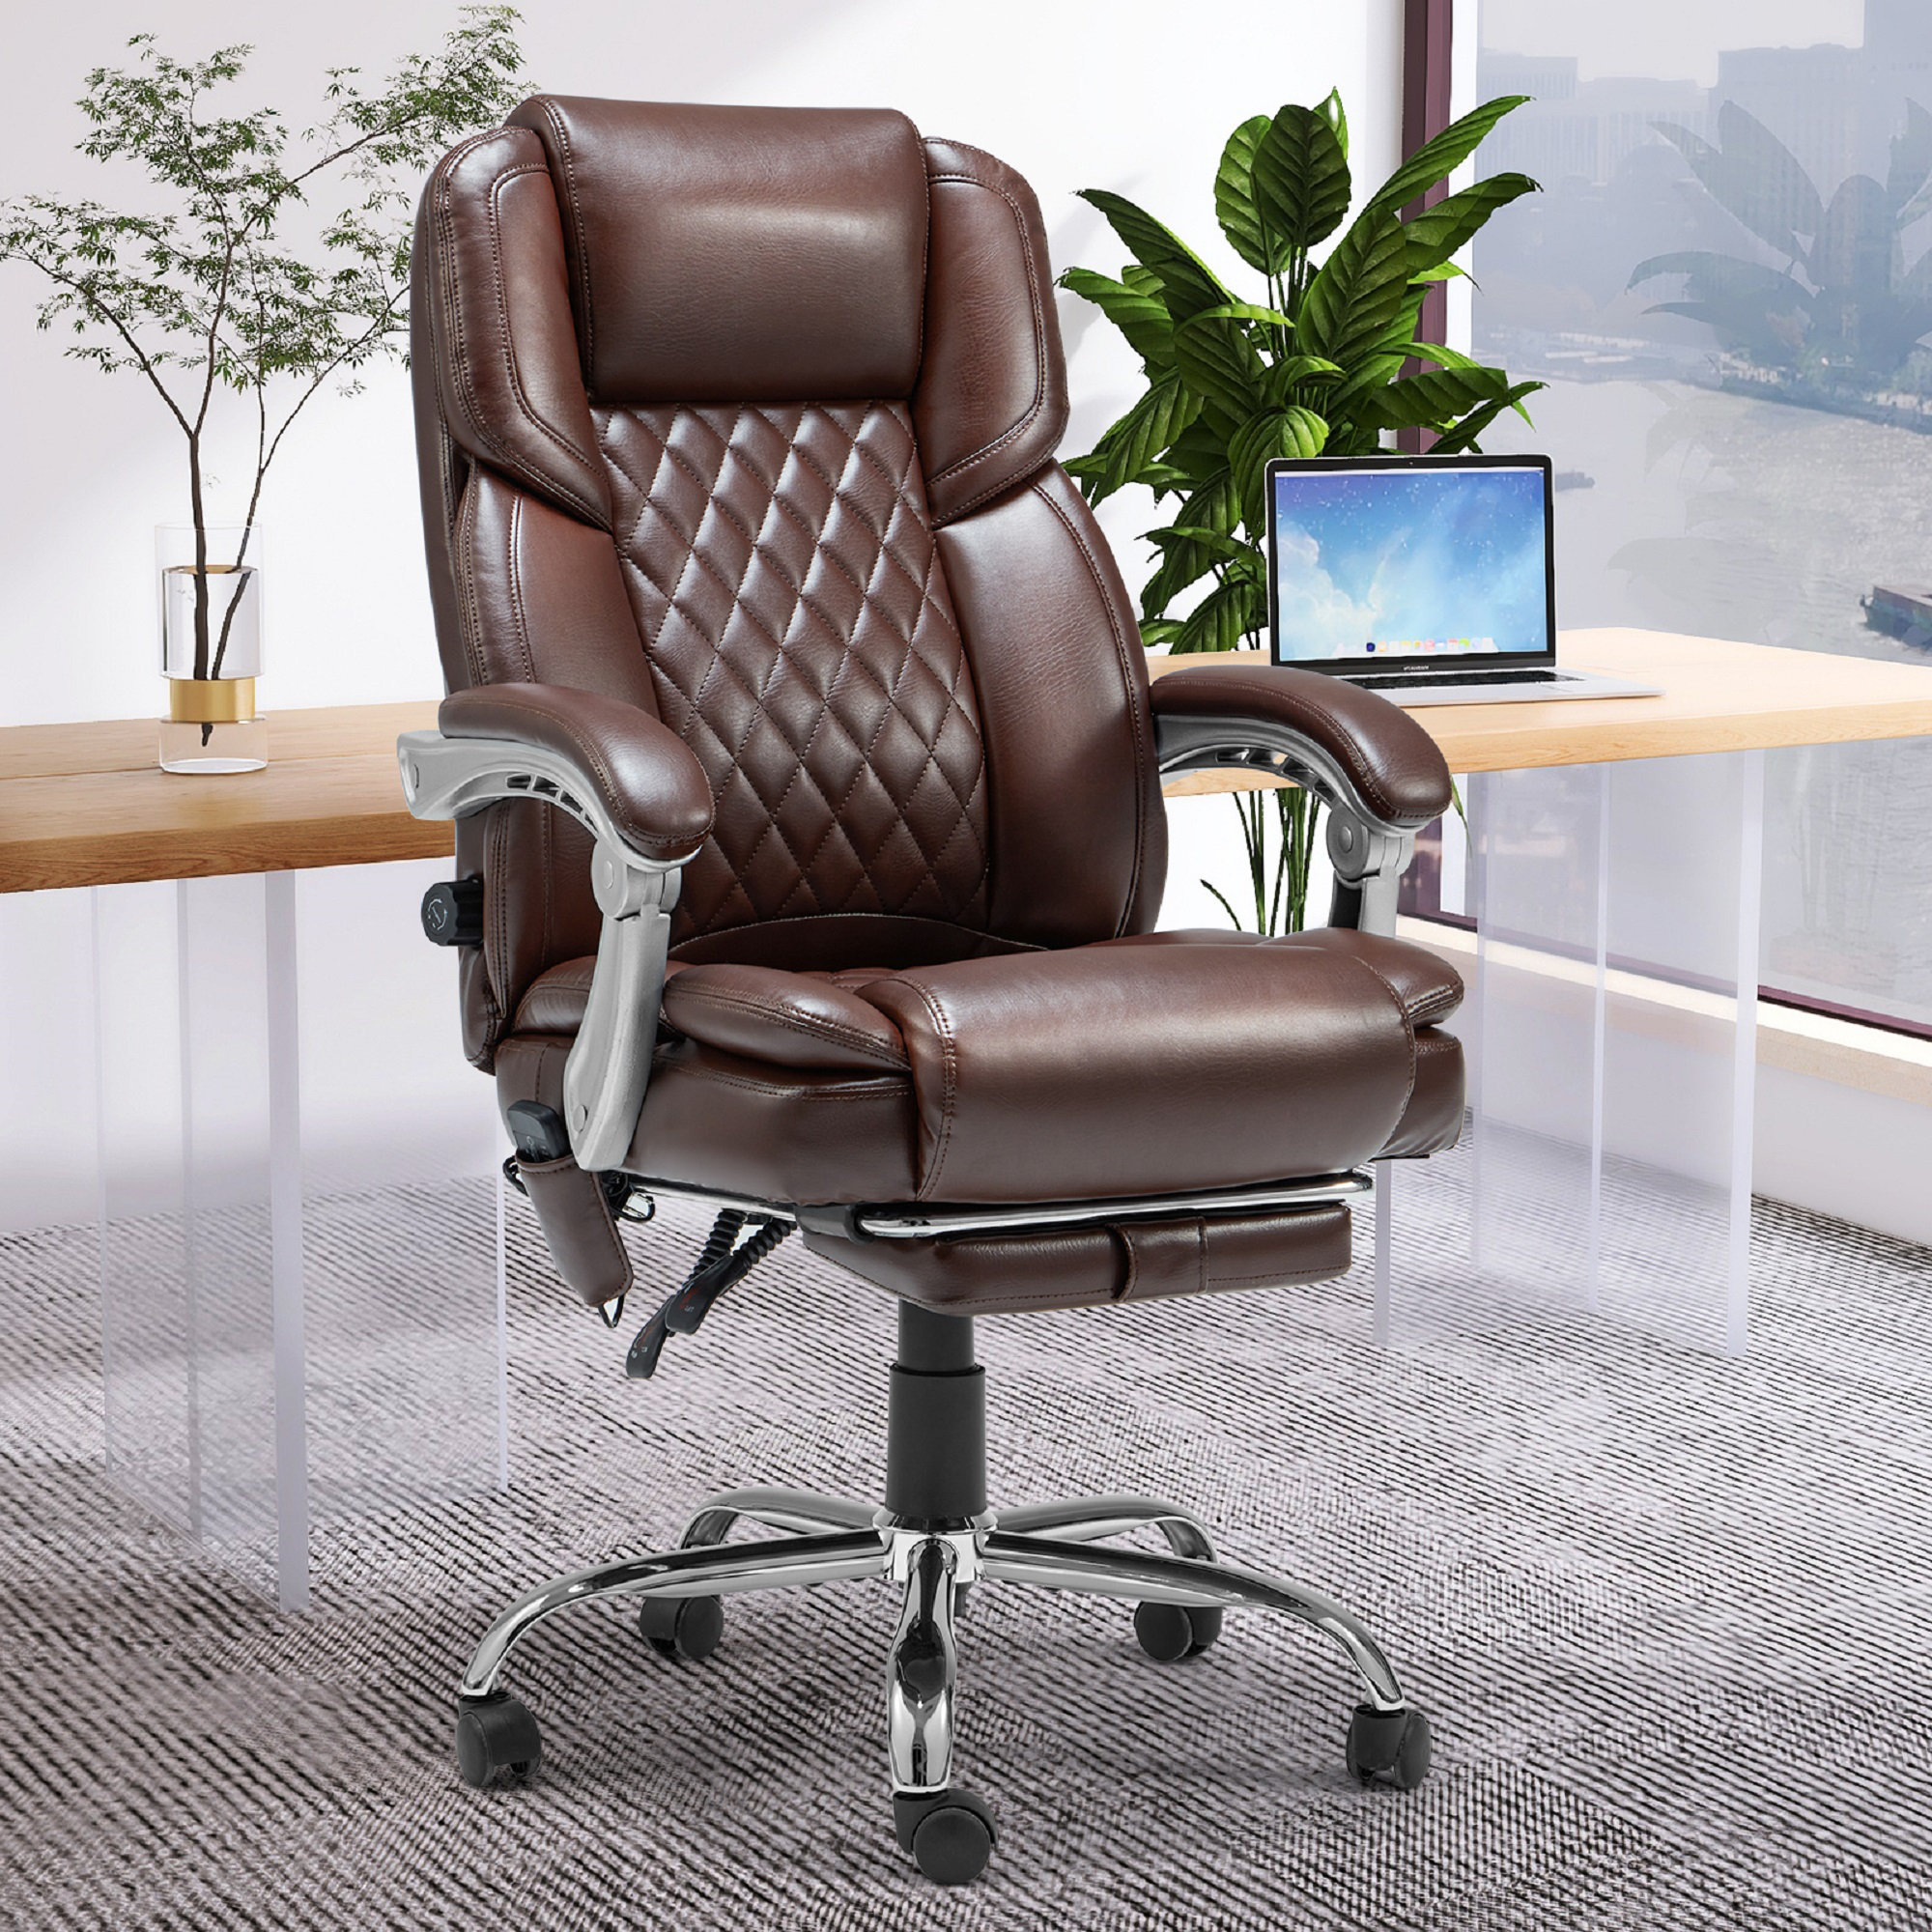 https://assets.wfcdn.com/im/27265178/compr-r85/2270/227094648/katrein-ergonomic-heated-massage-executive-chair.jpg